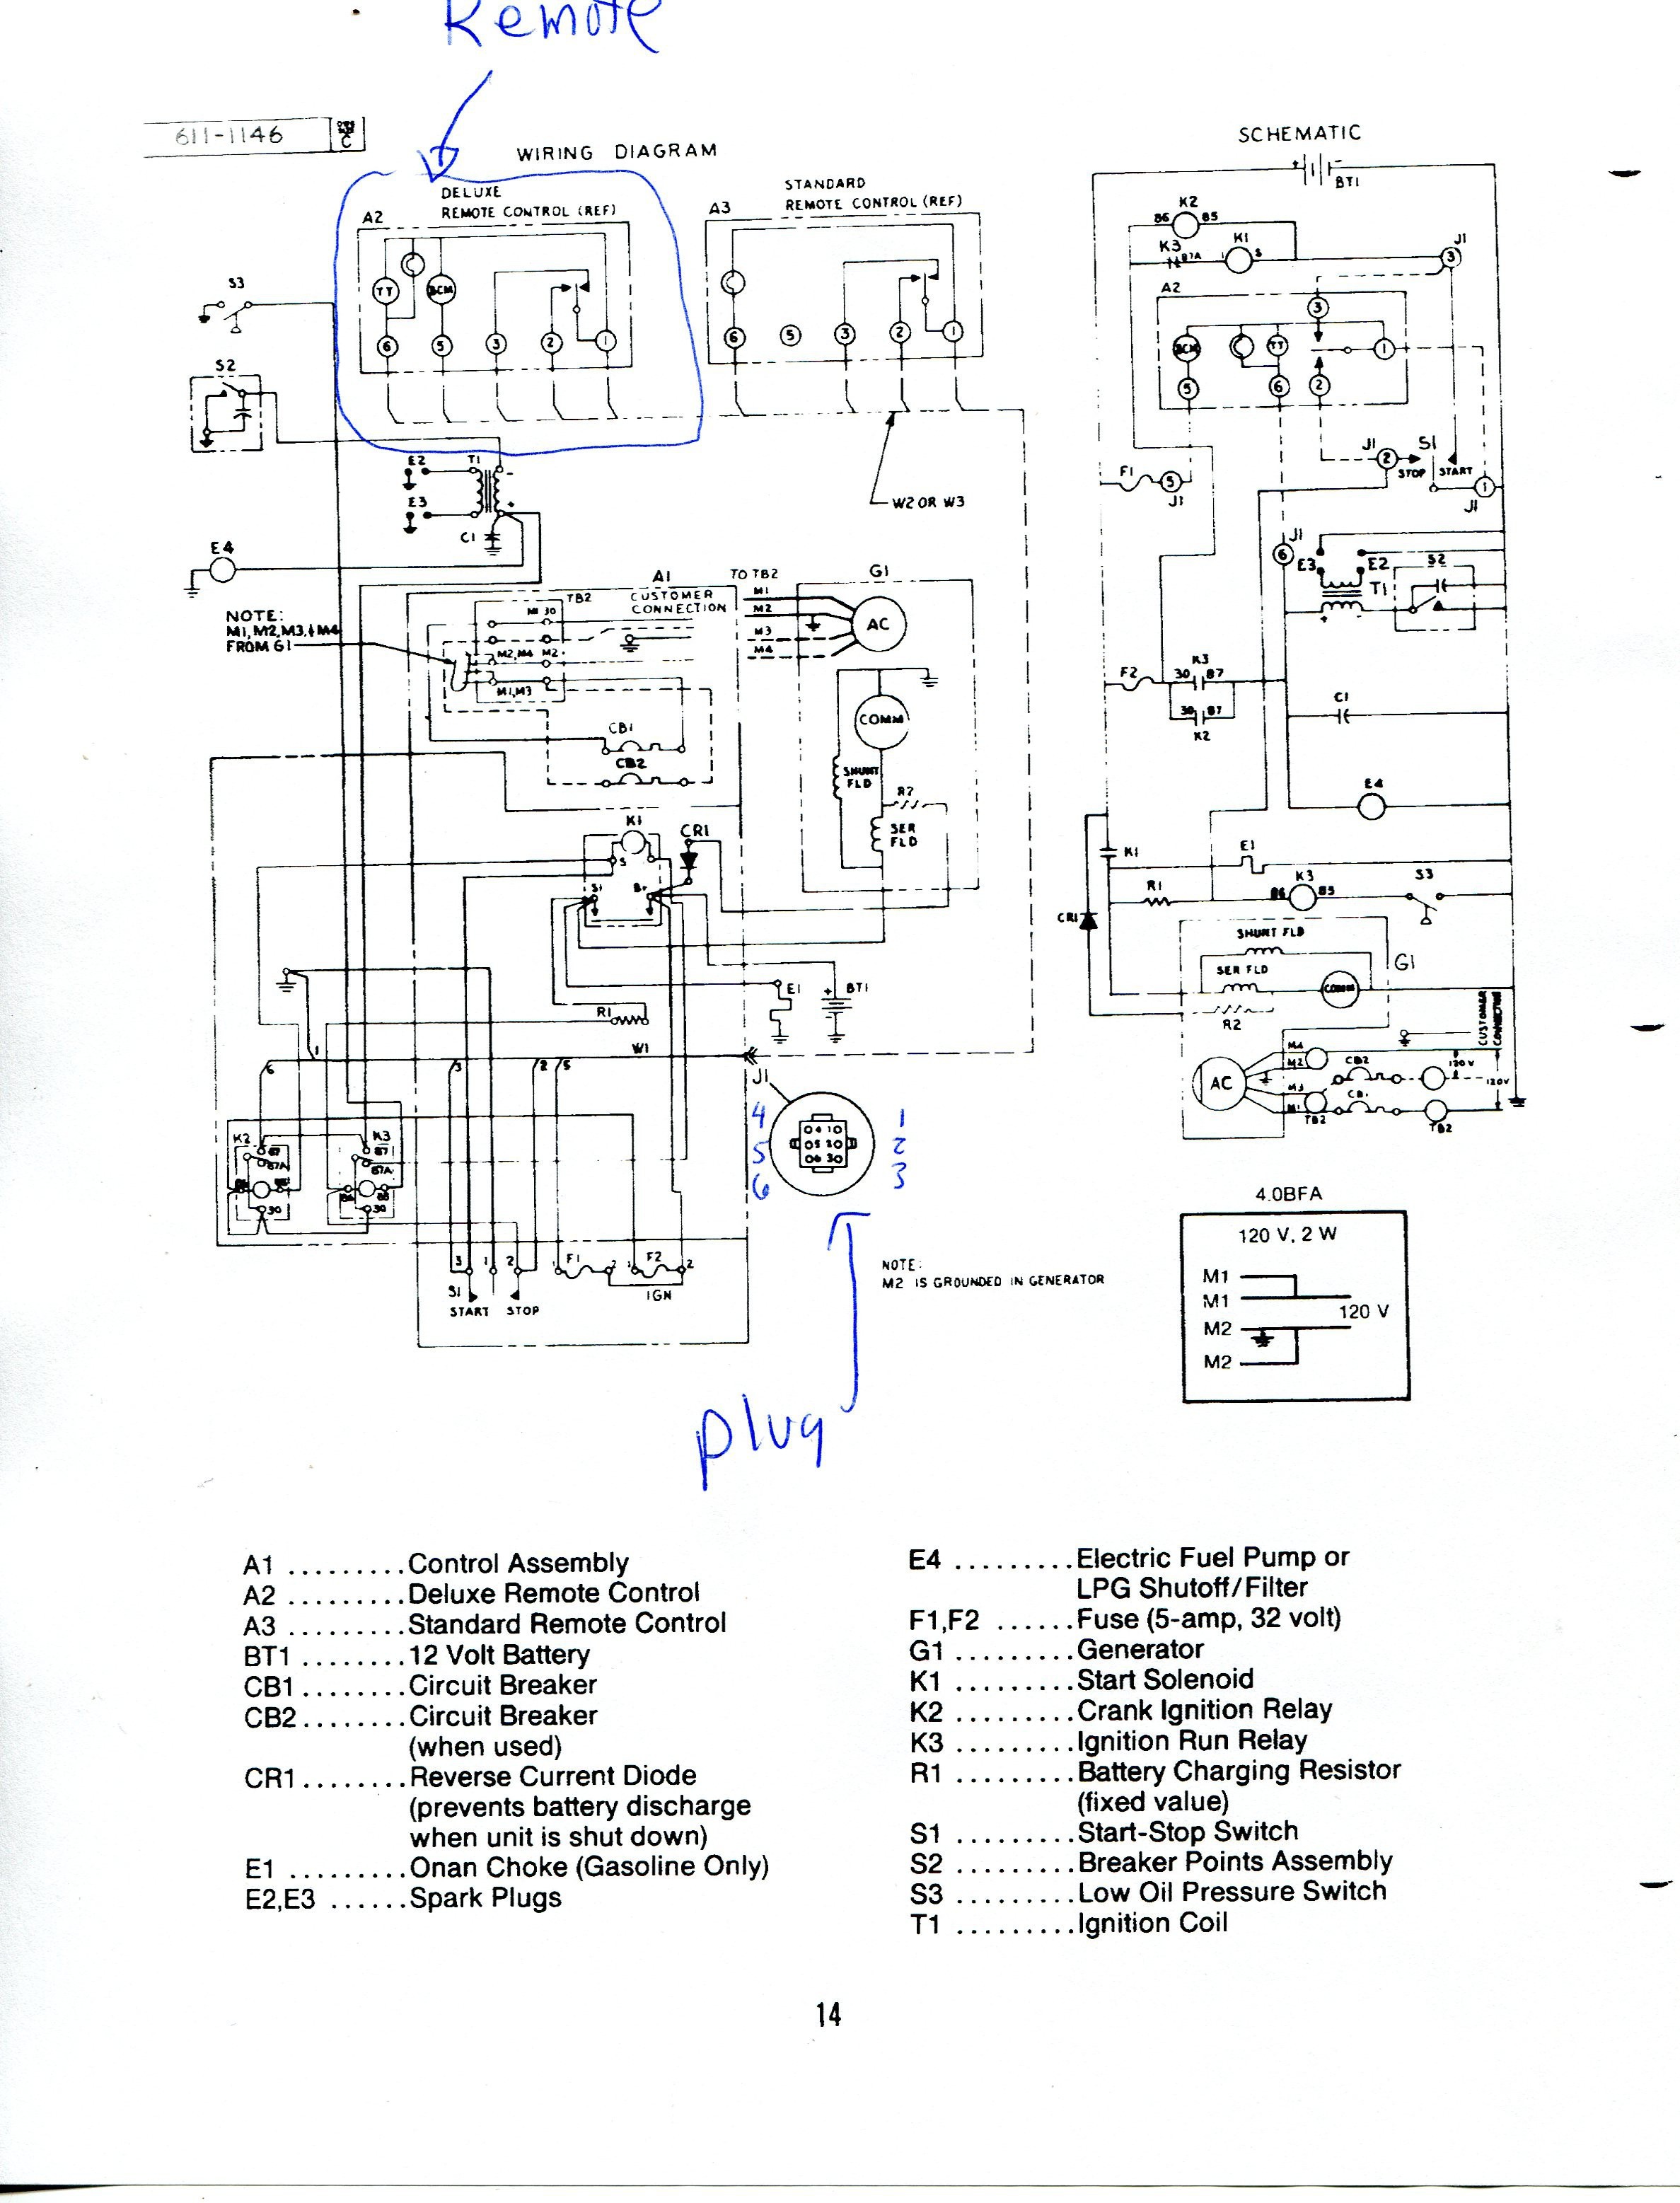 onan microlite 4000 wiring diagram wire center u2022 rh 144 202 60 241 4Kw an Generator Wiring Diagram an Quiet Diesel Generator Wiring Diagram